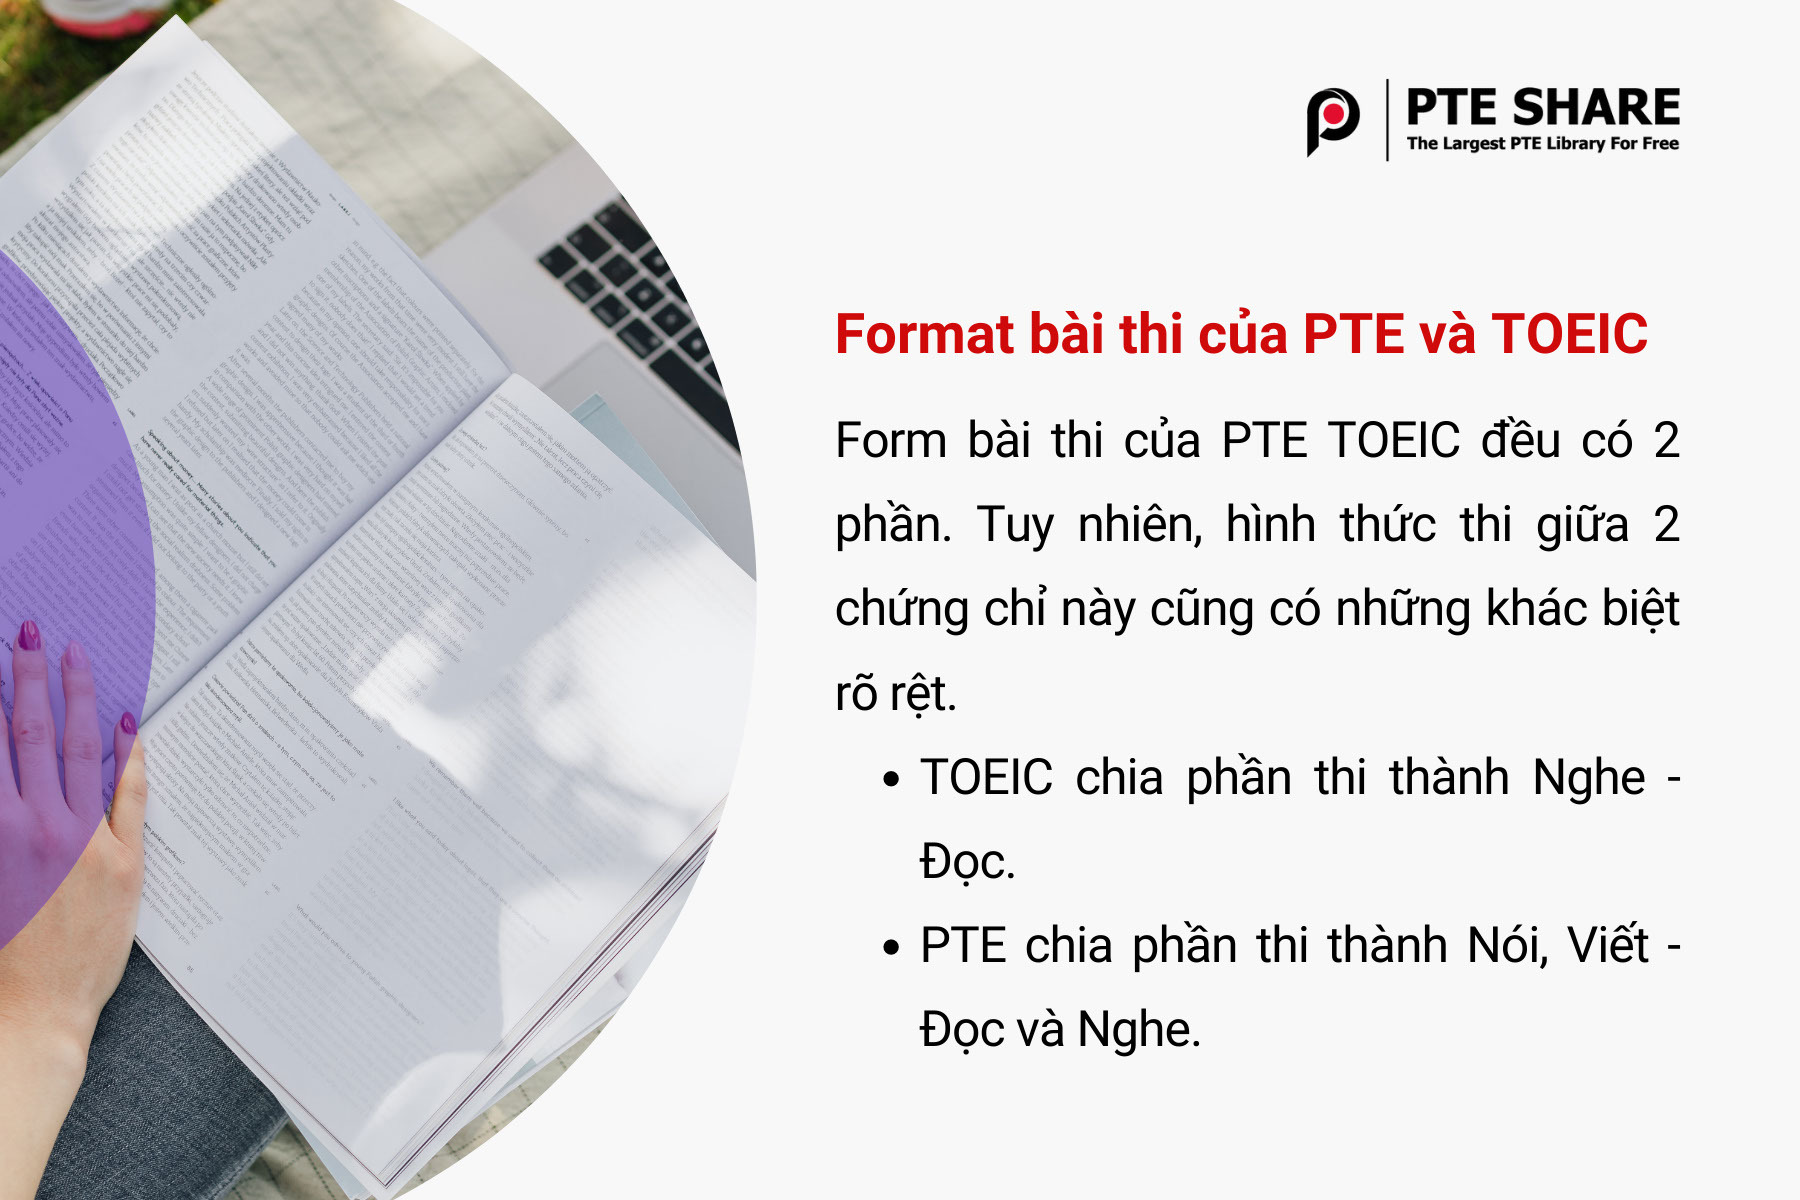 Format bài thi của PTE và TOEIC